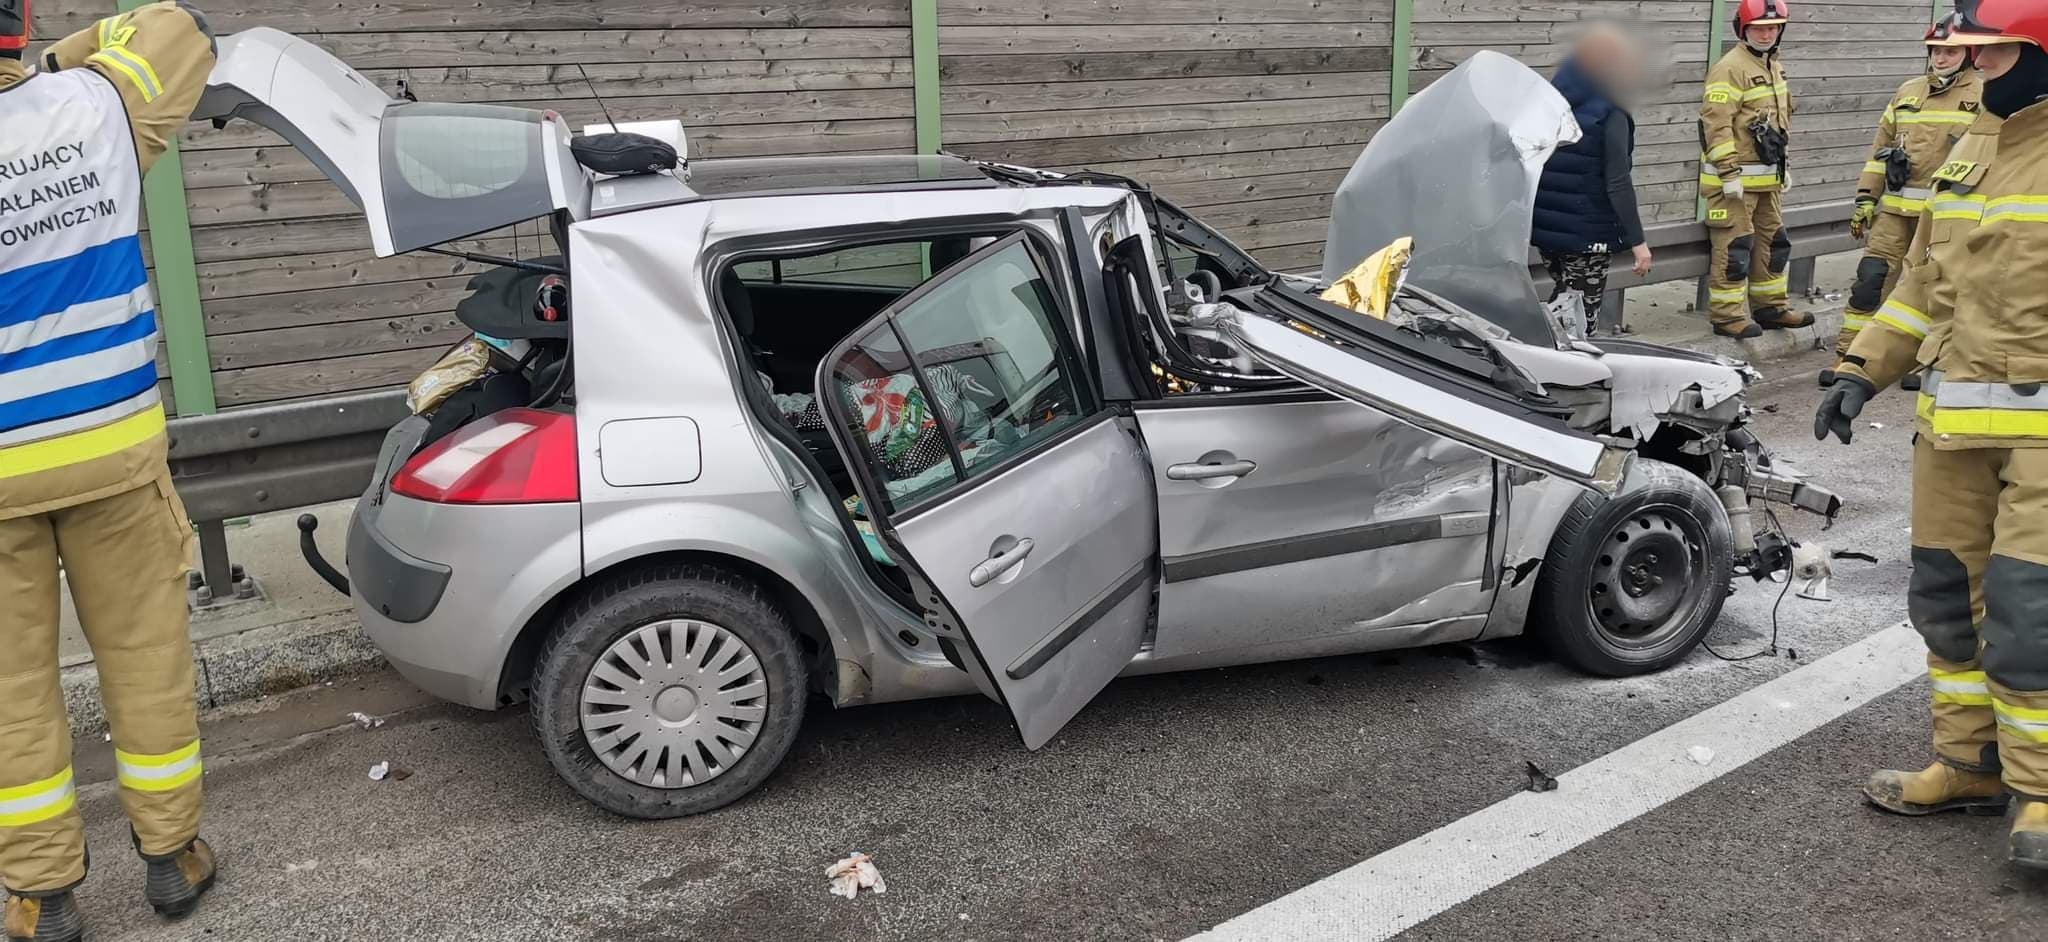 Groźny wypadek na trasie Lublin – Warszawa. Pojazd osobowy uderzył w naczepę ciężarówki (zdjęcia, wideo)